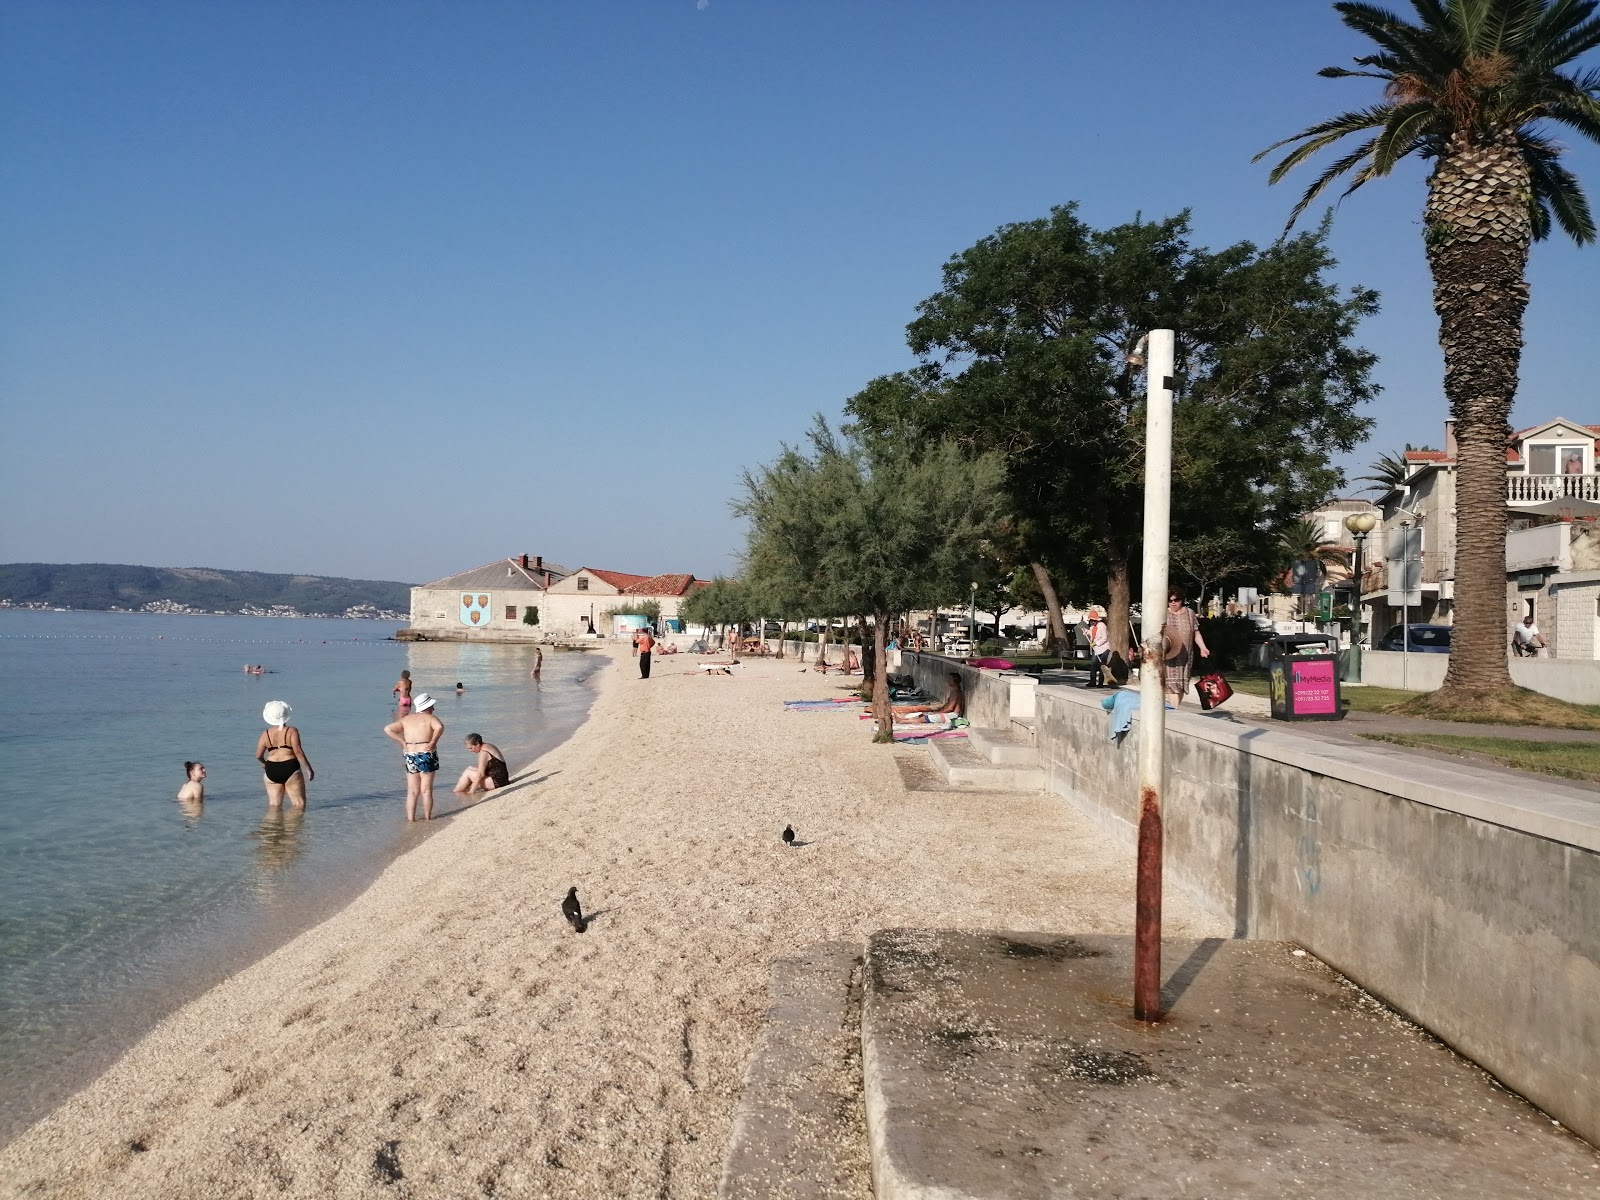 Fotografie cu Dardin beach cu o suprafață de apa pură turcoaz